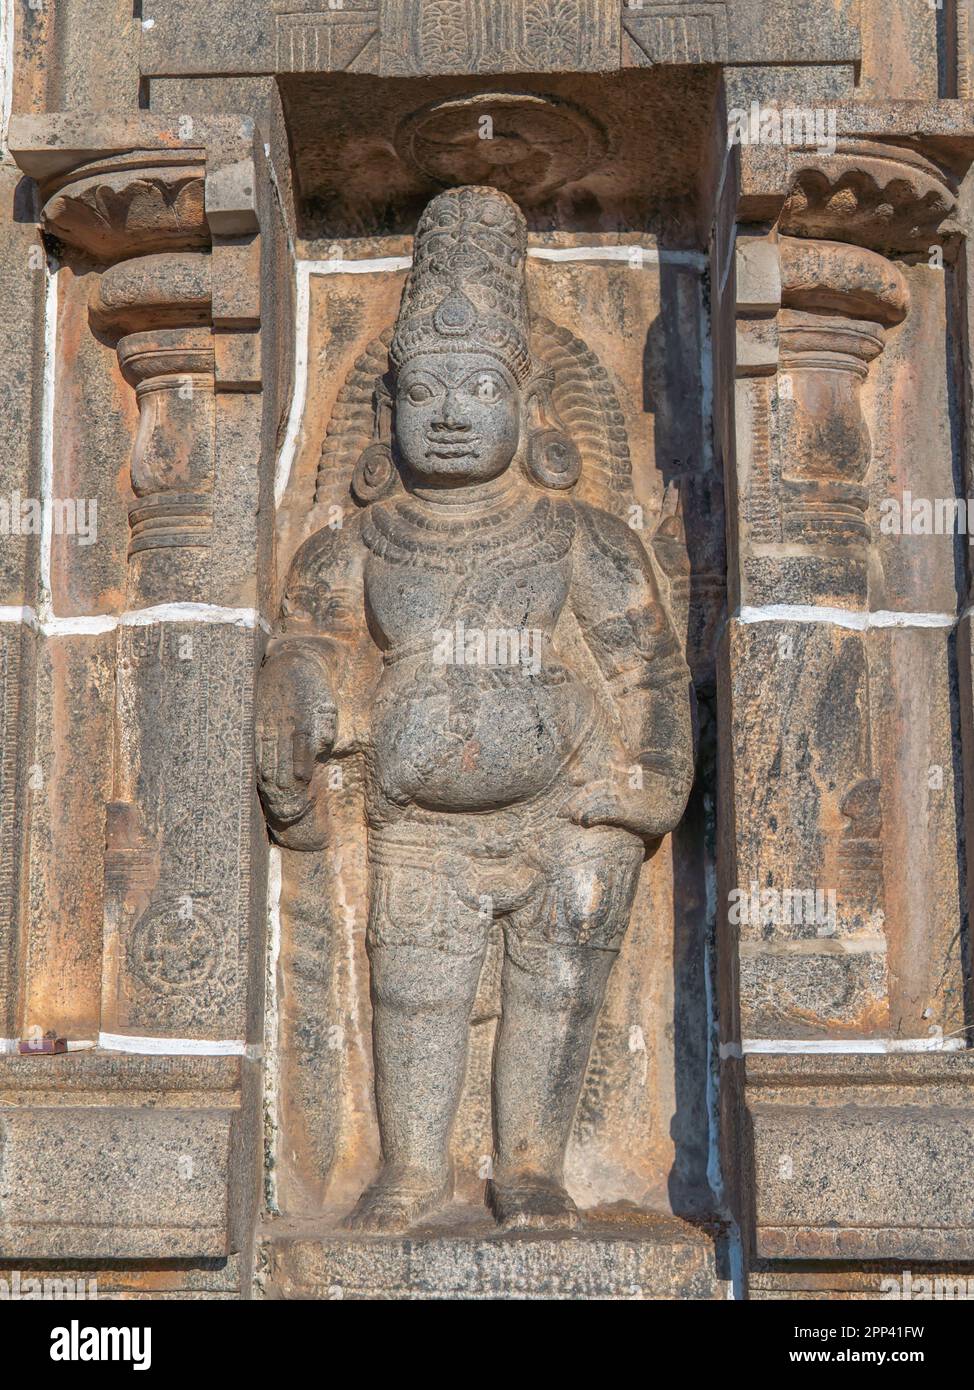 Sul gopuram del tempio Nataraja sono scolpiti idoli, uno dei cinque templi più sacri di Shiva, ognuno dei quali simboleggia uno dei cinque elementi della natura Foto Stock